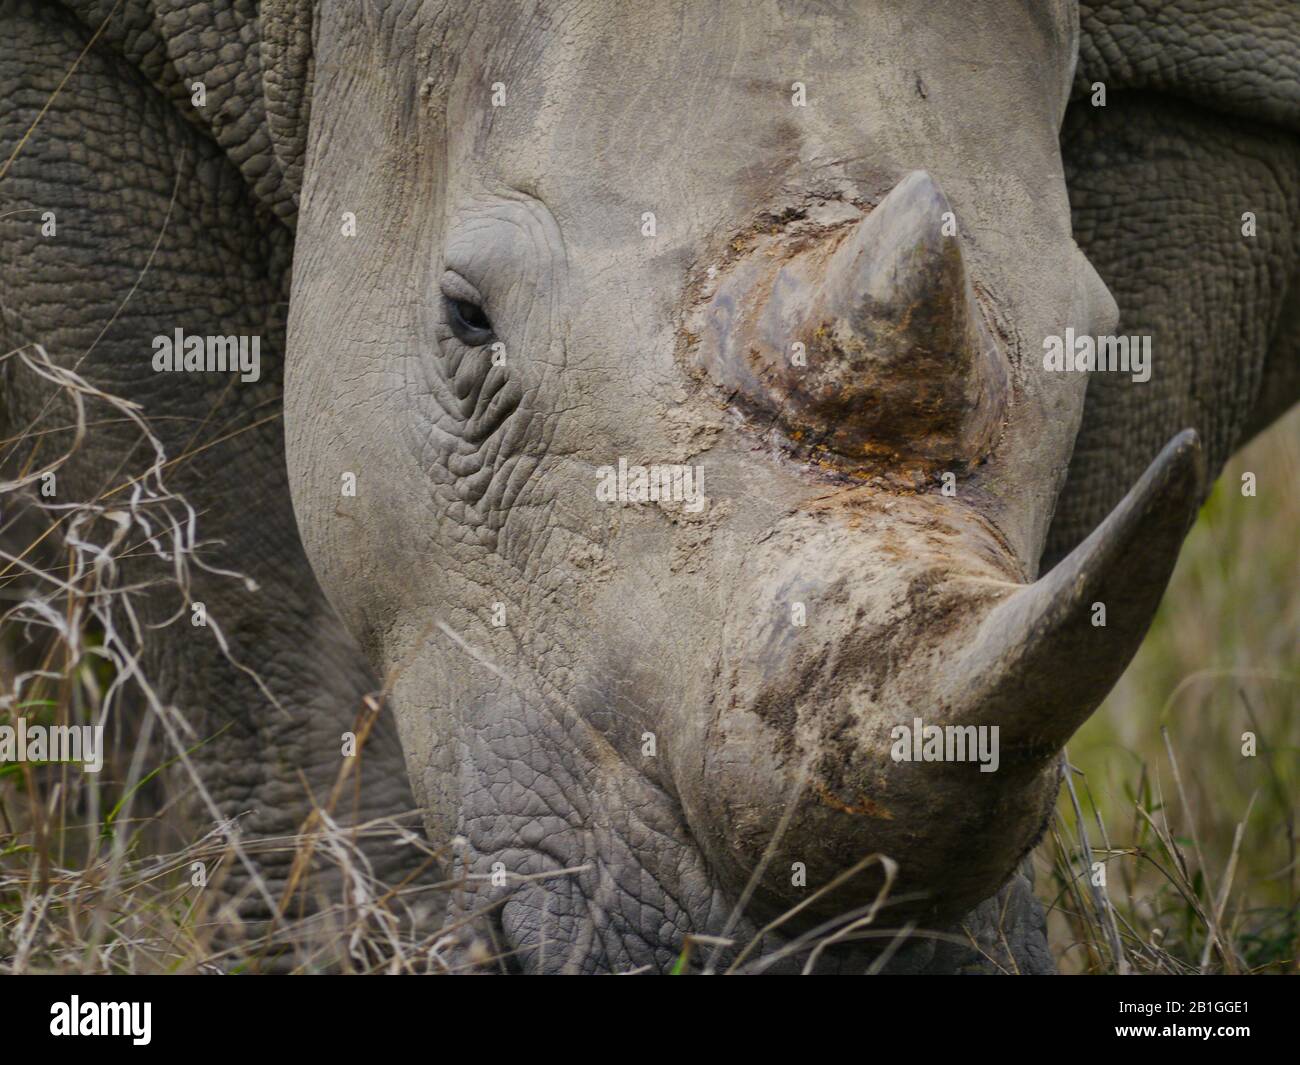 Primo piano di un rinoceronte bianco (Ceratotherium simum) al pascolo nel Kruger Nationalpark, occhio a occhio con quell'animale in pericolo Foto Stock